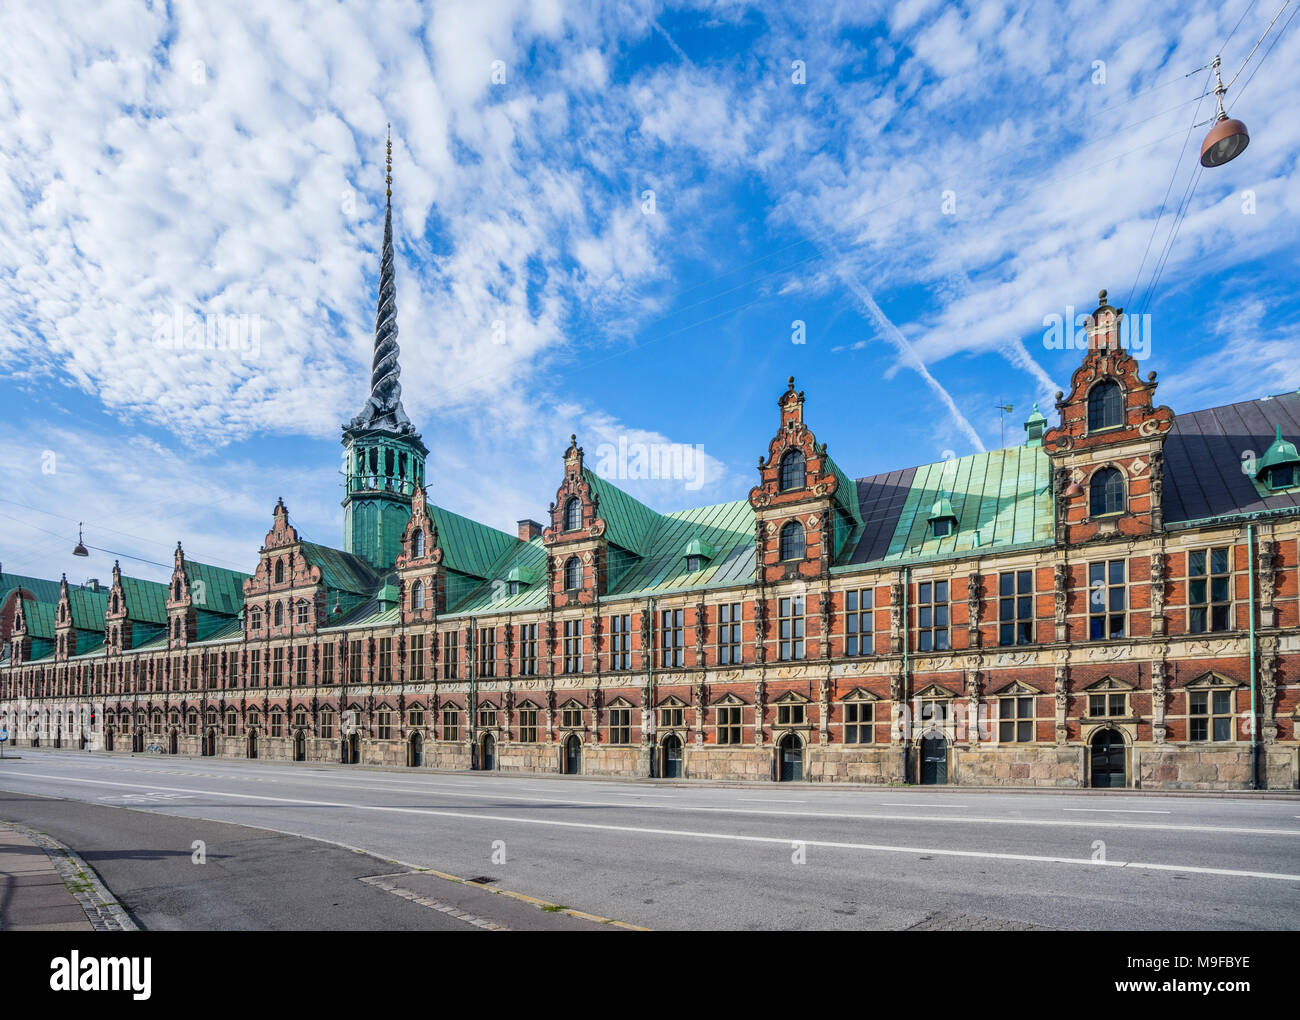 Dänemark, Seeland, Kopenhagen, Blick auf die Børsen, Royal Exchange, der ehemaligen Börse mit dem markanten Turm, wie die Schwänze der vier dr geformt Stockfoto